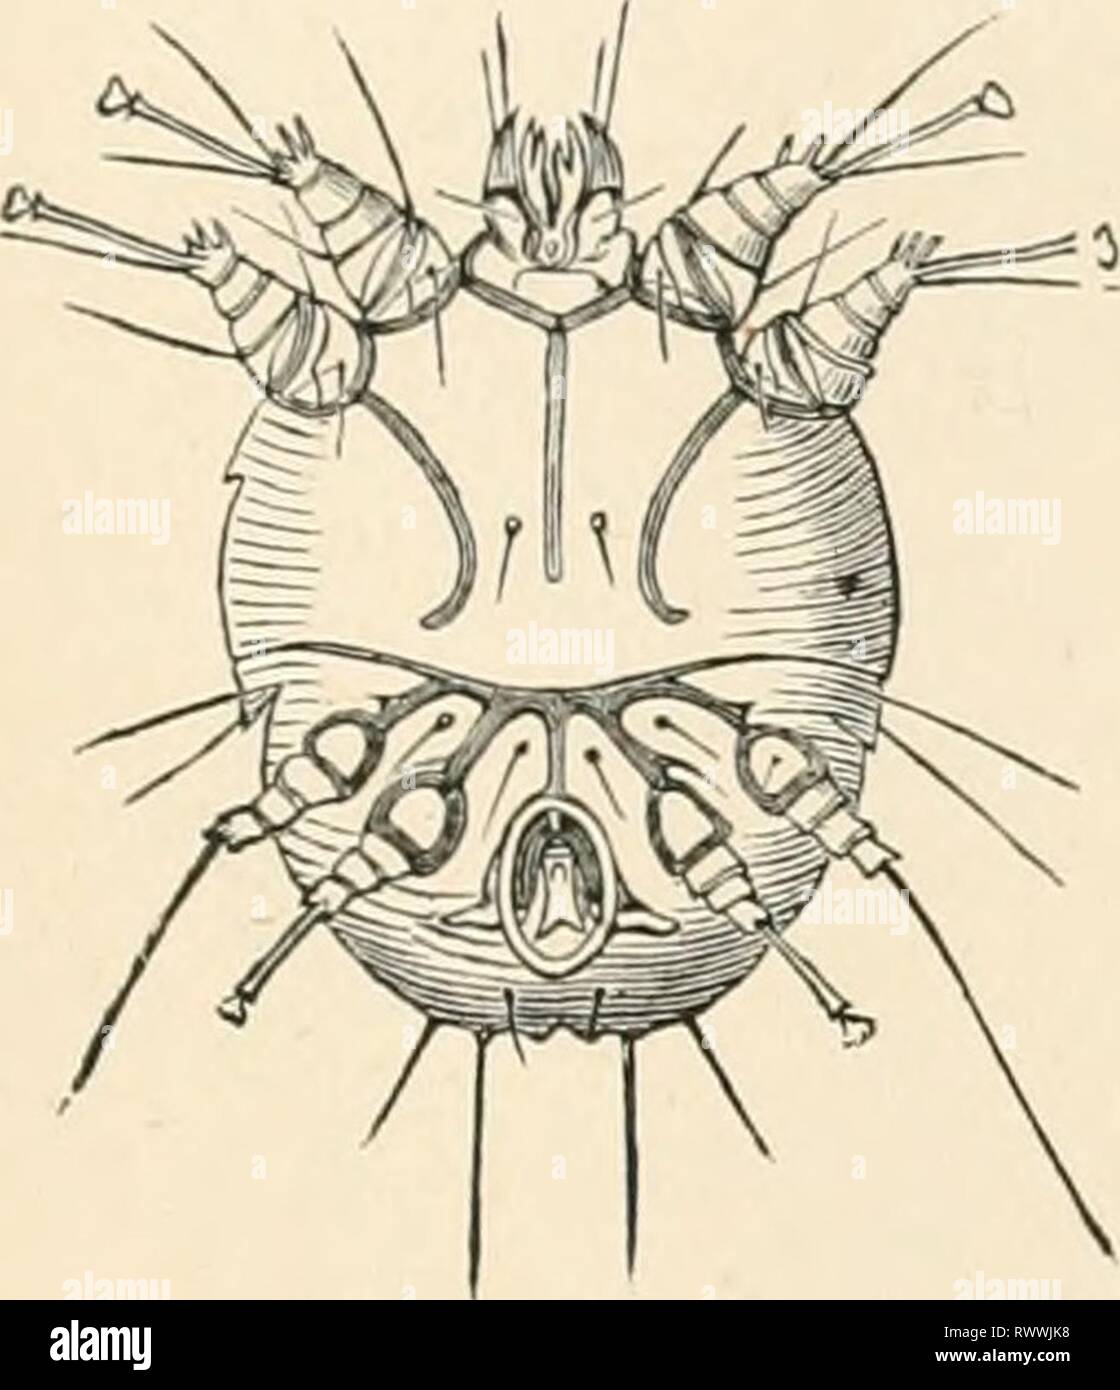 Texte-livre élémentaire de zoologie (1884) texte-livre élémentaire de zoologie0101elementarytextbo clau Année : 1884 ACARIENS. AW 493//'///Clap., sur les racines. Fecularum GrlycipTiagv& Guer.. sur les pommes de terre. 7r///&gt;nju/.t creusé., selon Megnin ami Robin, contient les formes larvaires, qui s'attachent aux insectes par leurs ventouses. Fain. Ixodidae. Les tiques. Habituellement plus d'acariens suceurs de sang, avec de forts bouclier dorsal et de grandes dents protractile, chelicerEe. L'pedipalpi sont thrce ou quatre aboutées et en forme de club ; leurs bases sont associées pour former un d'un Banque D'Images